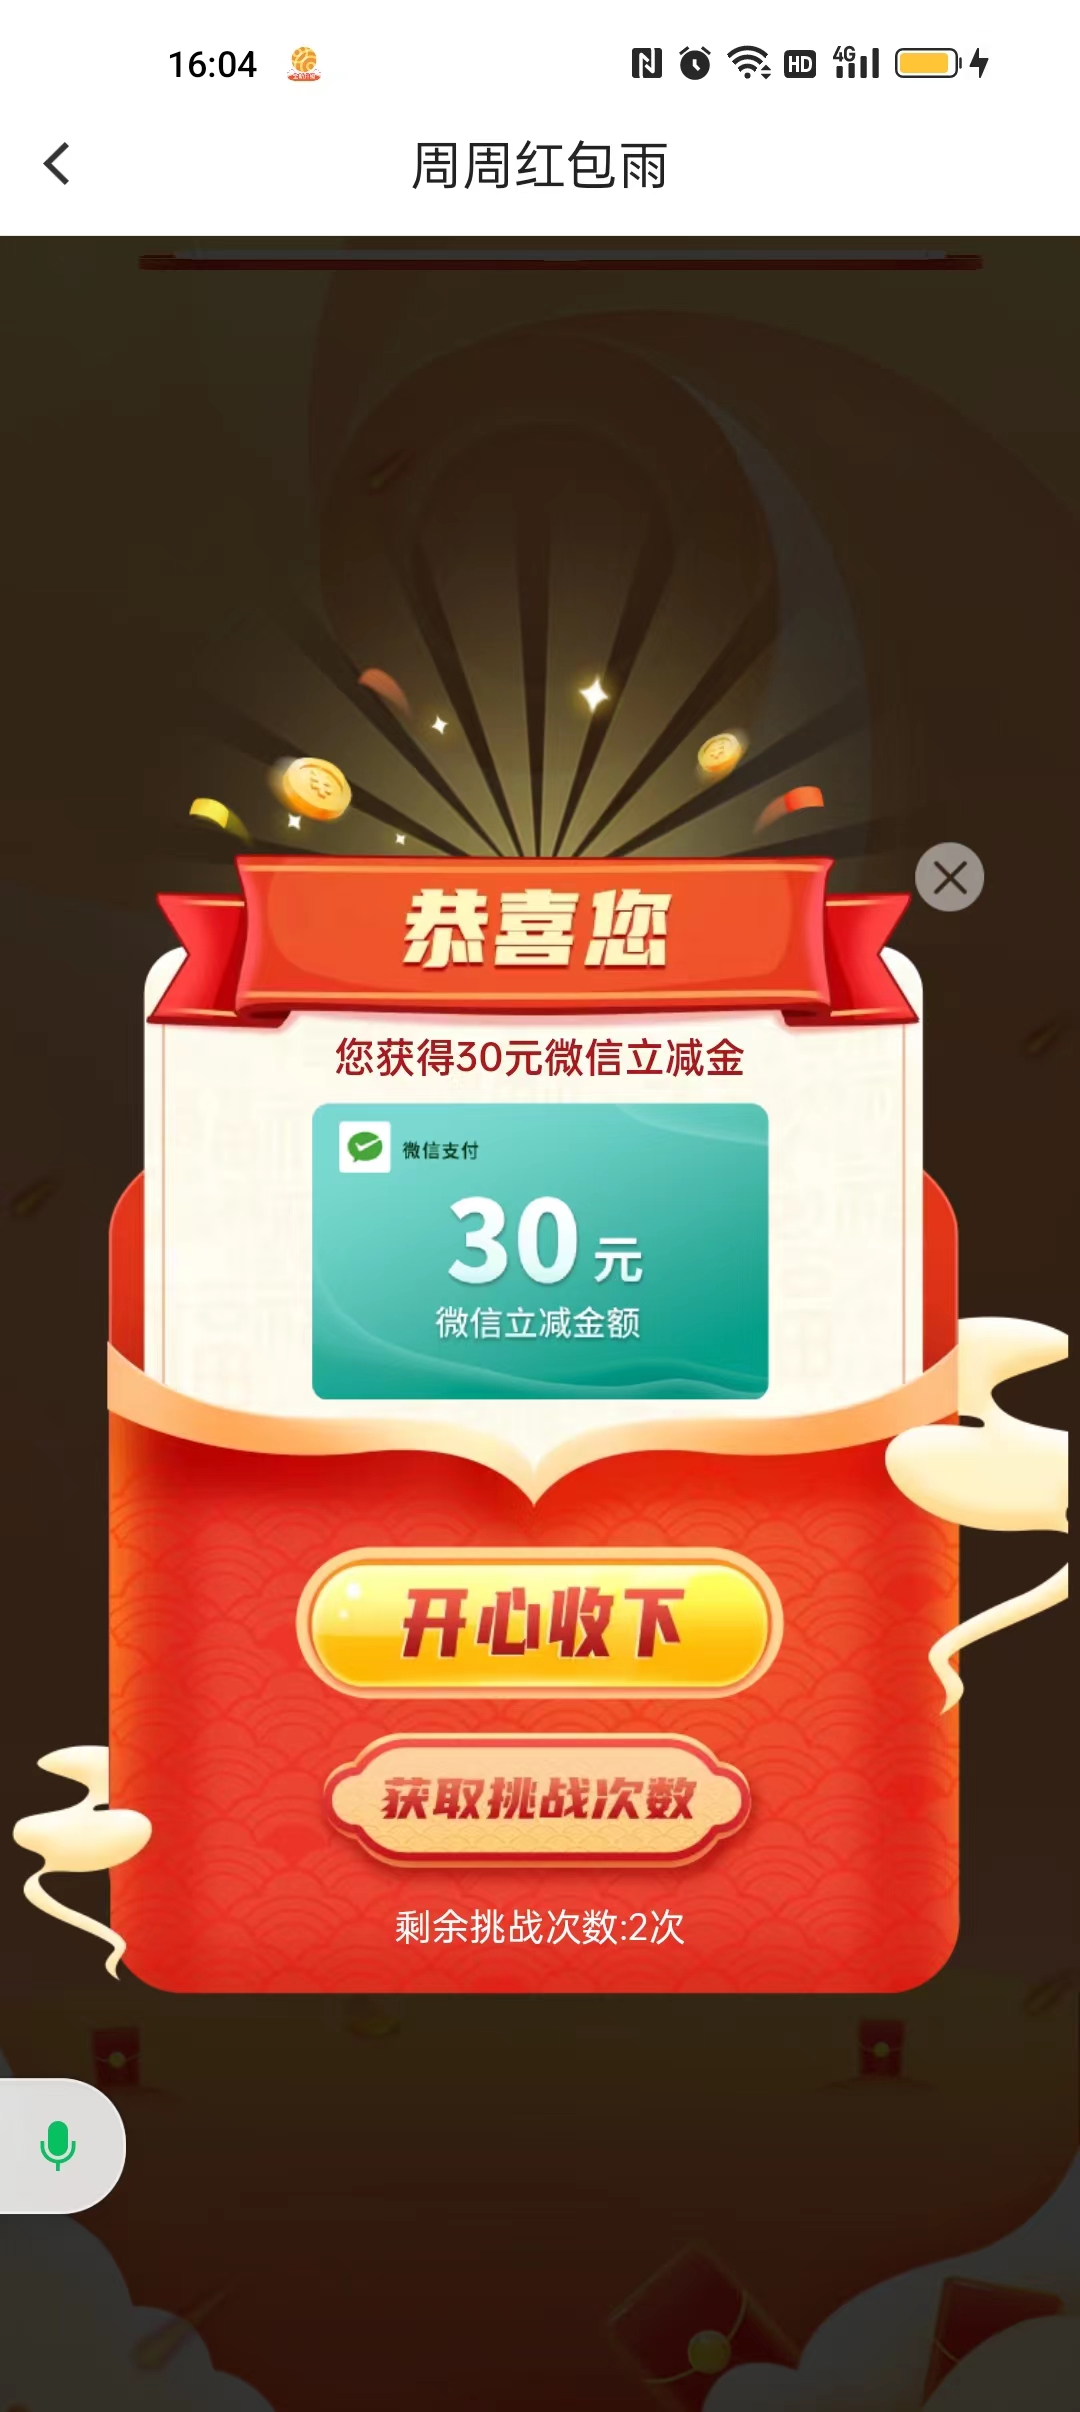 北京银行红包雨有水--速度-惠小助(52huixz.com)